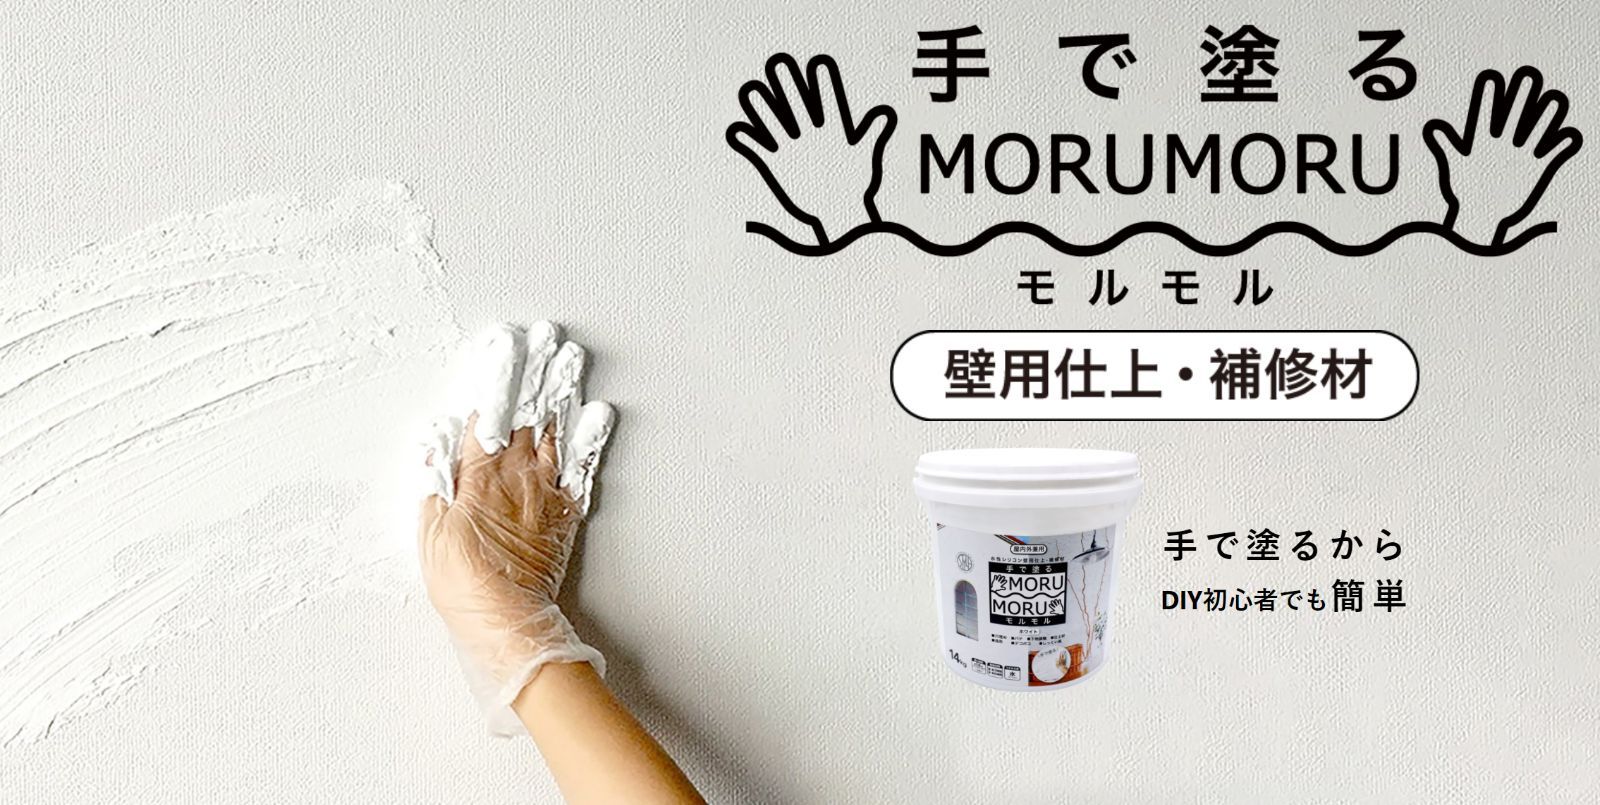 ニッペ 手で塗る塗料 MORUMORU コットン 14kg